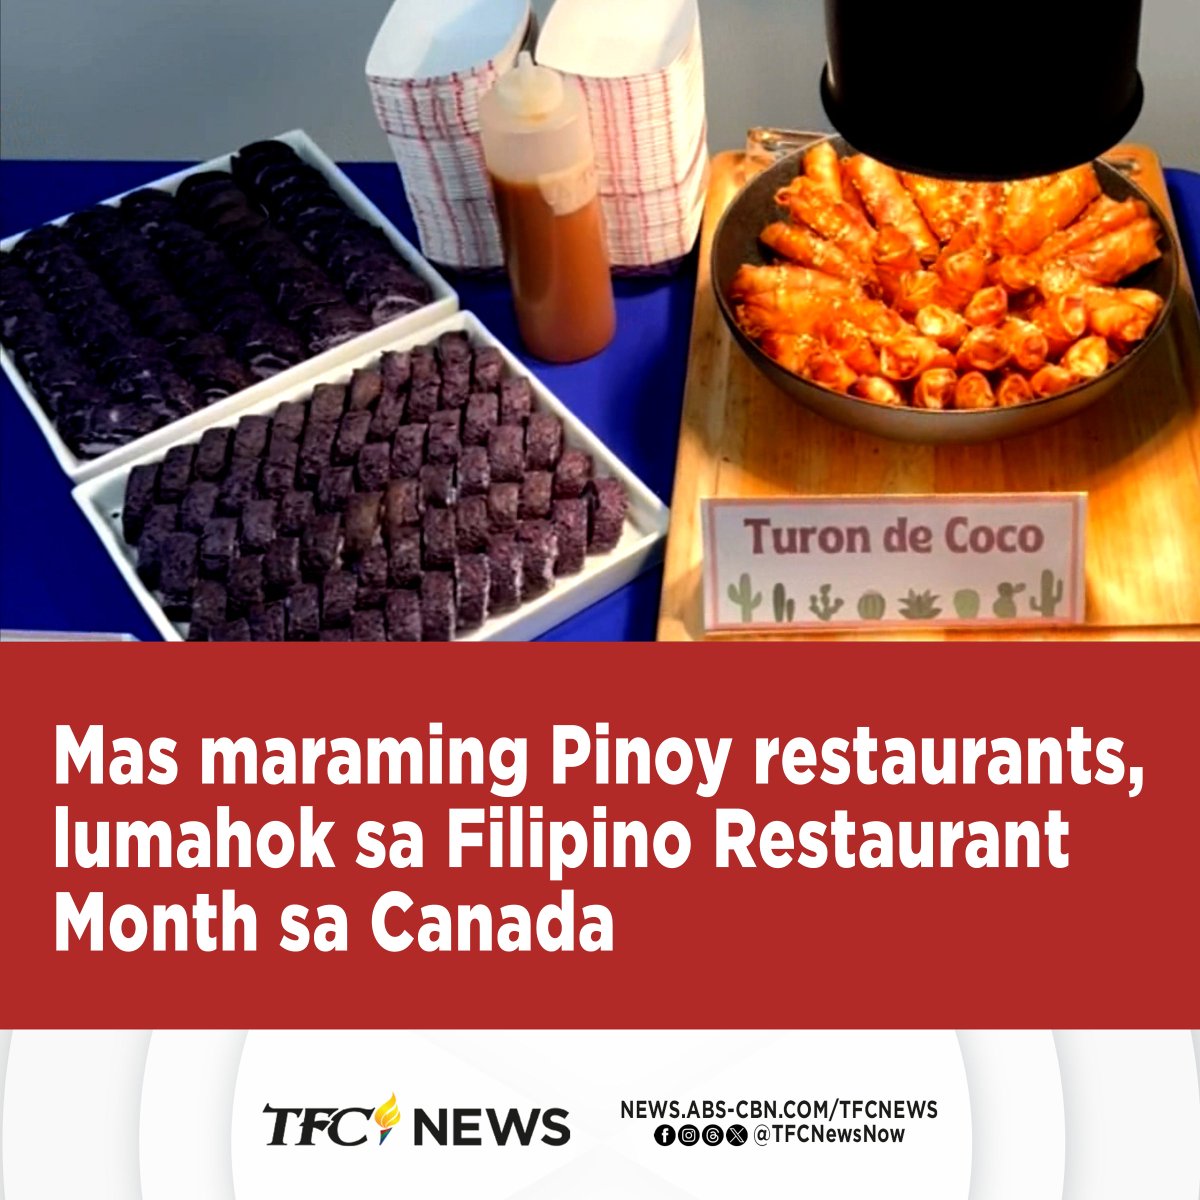 Bida ang pagkaing Pinoy sa patuloy na paggunita ng Filipino Restaurant Month sa Canada.

Silipin ang selebrasyon sa Calgary, sa pagpapatrol ni Jihan Alisangco. #TFCNews

PANOORIN: youtu.be/Q6p_JIfrUdc